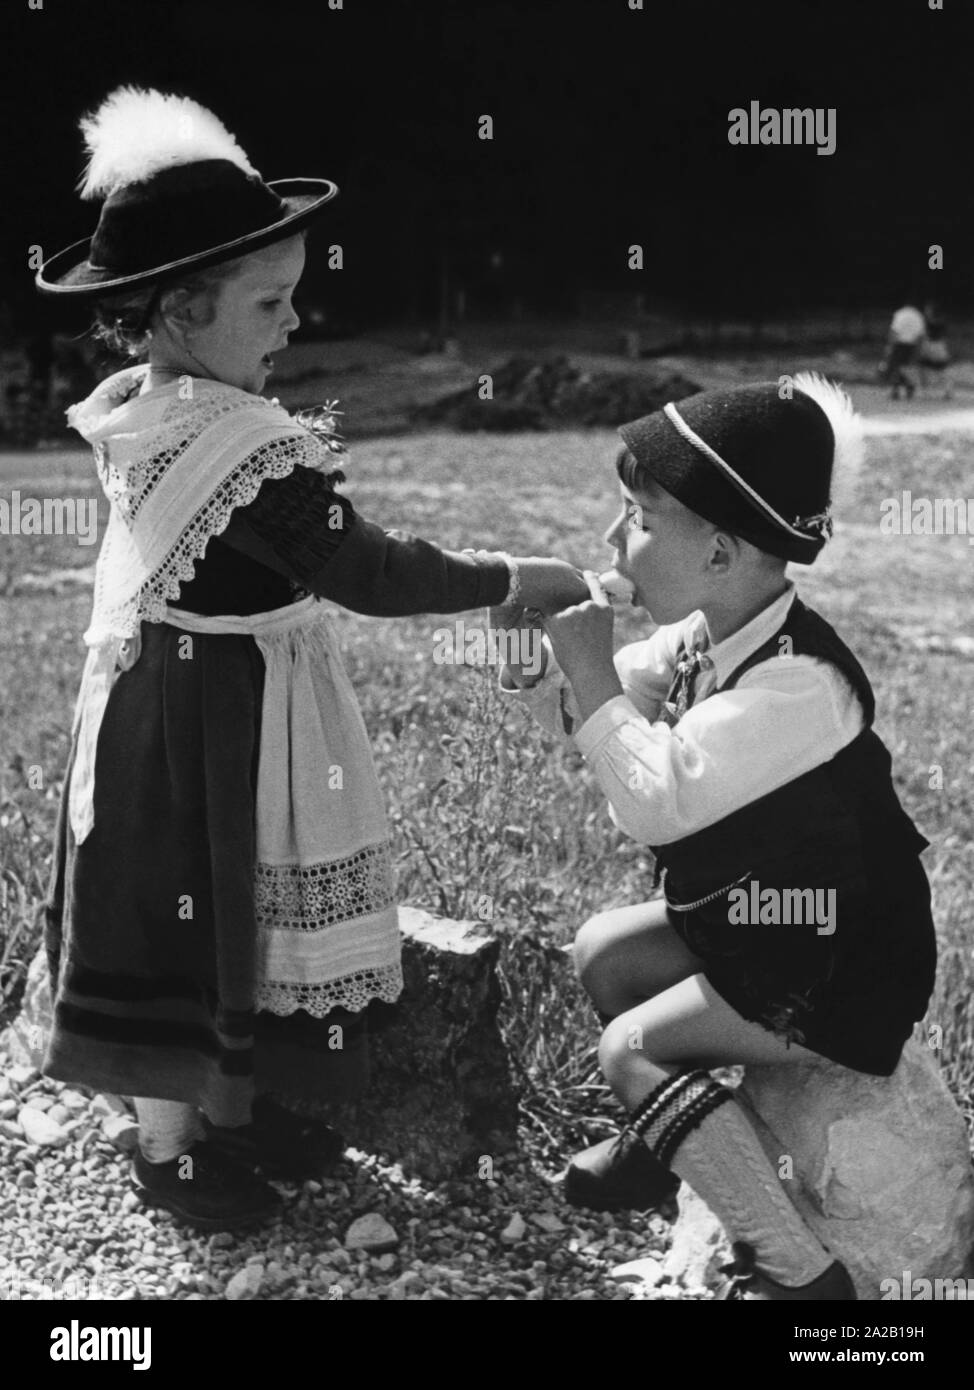 La jeune fille le garçon permet de mordre dans sa glace. Photo non datée, probablement dans les années 1960. Banque D'Images